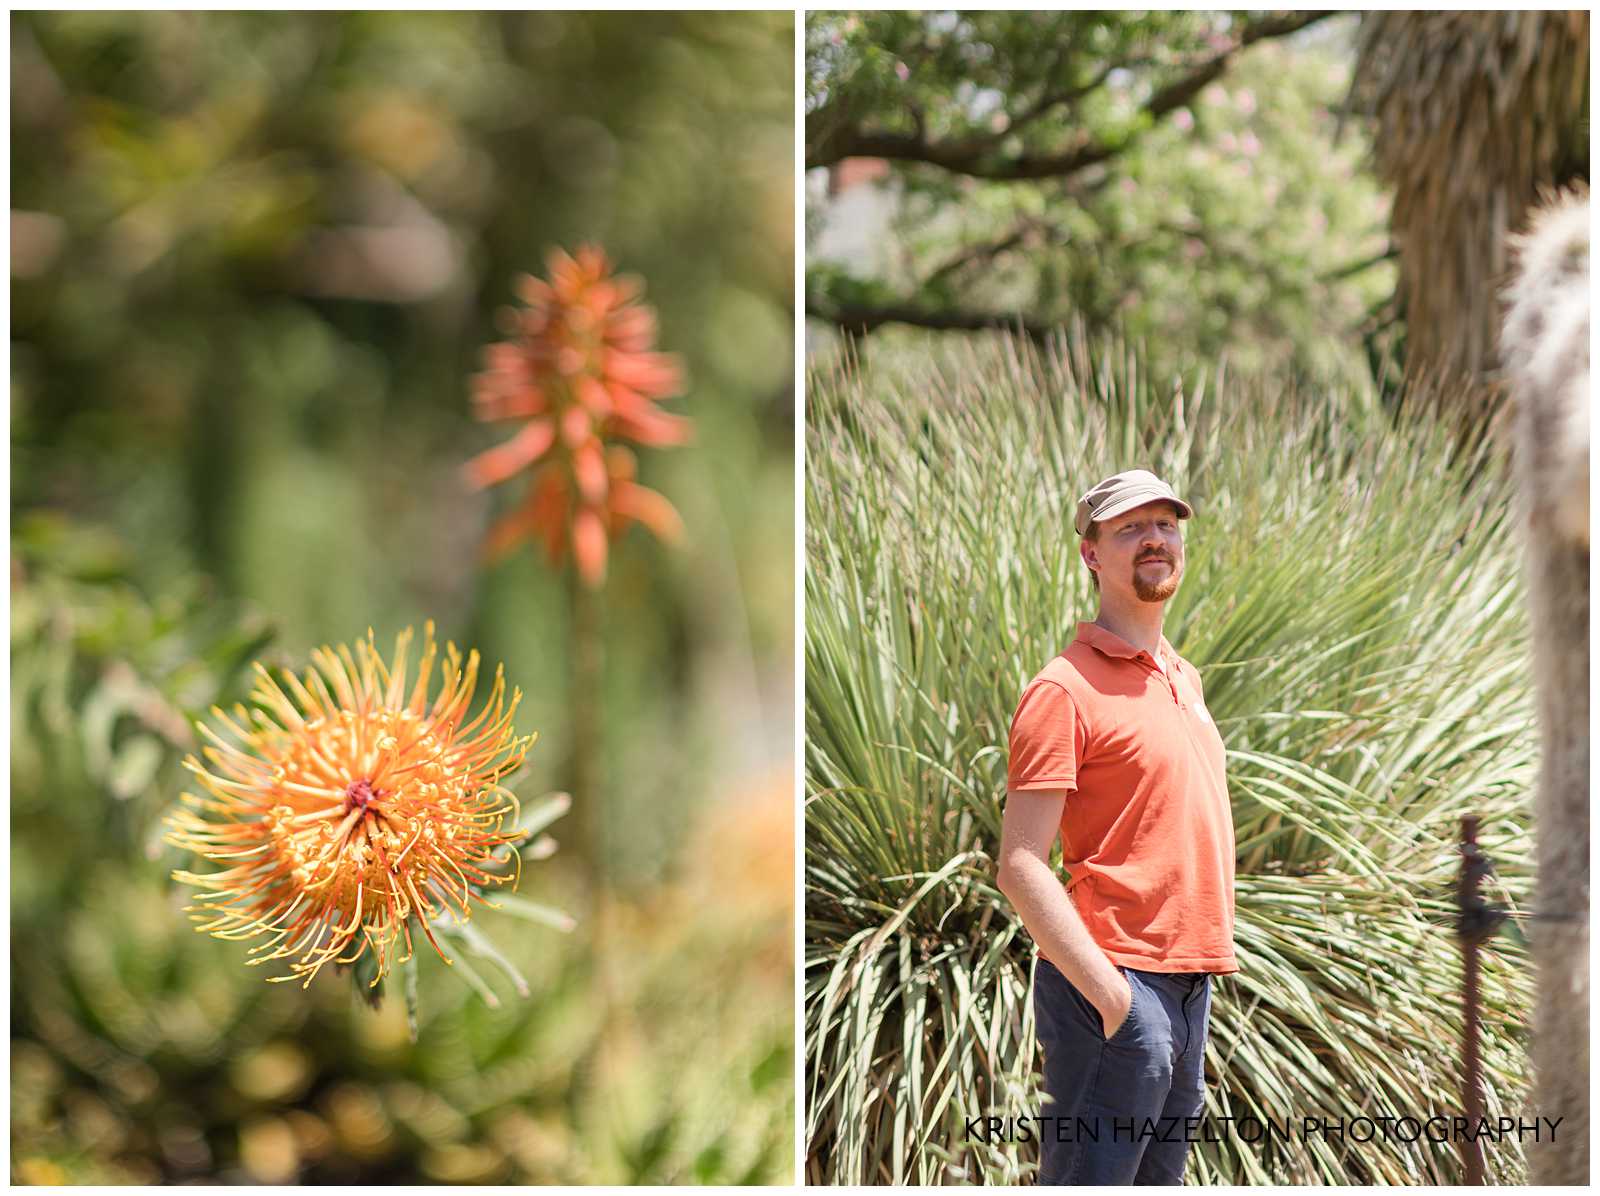 Man in orange shirt in a cactus garden